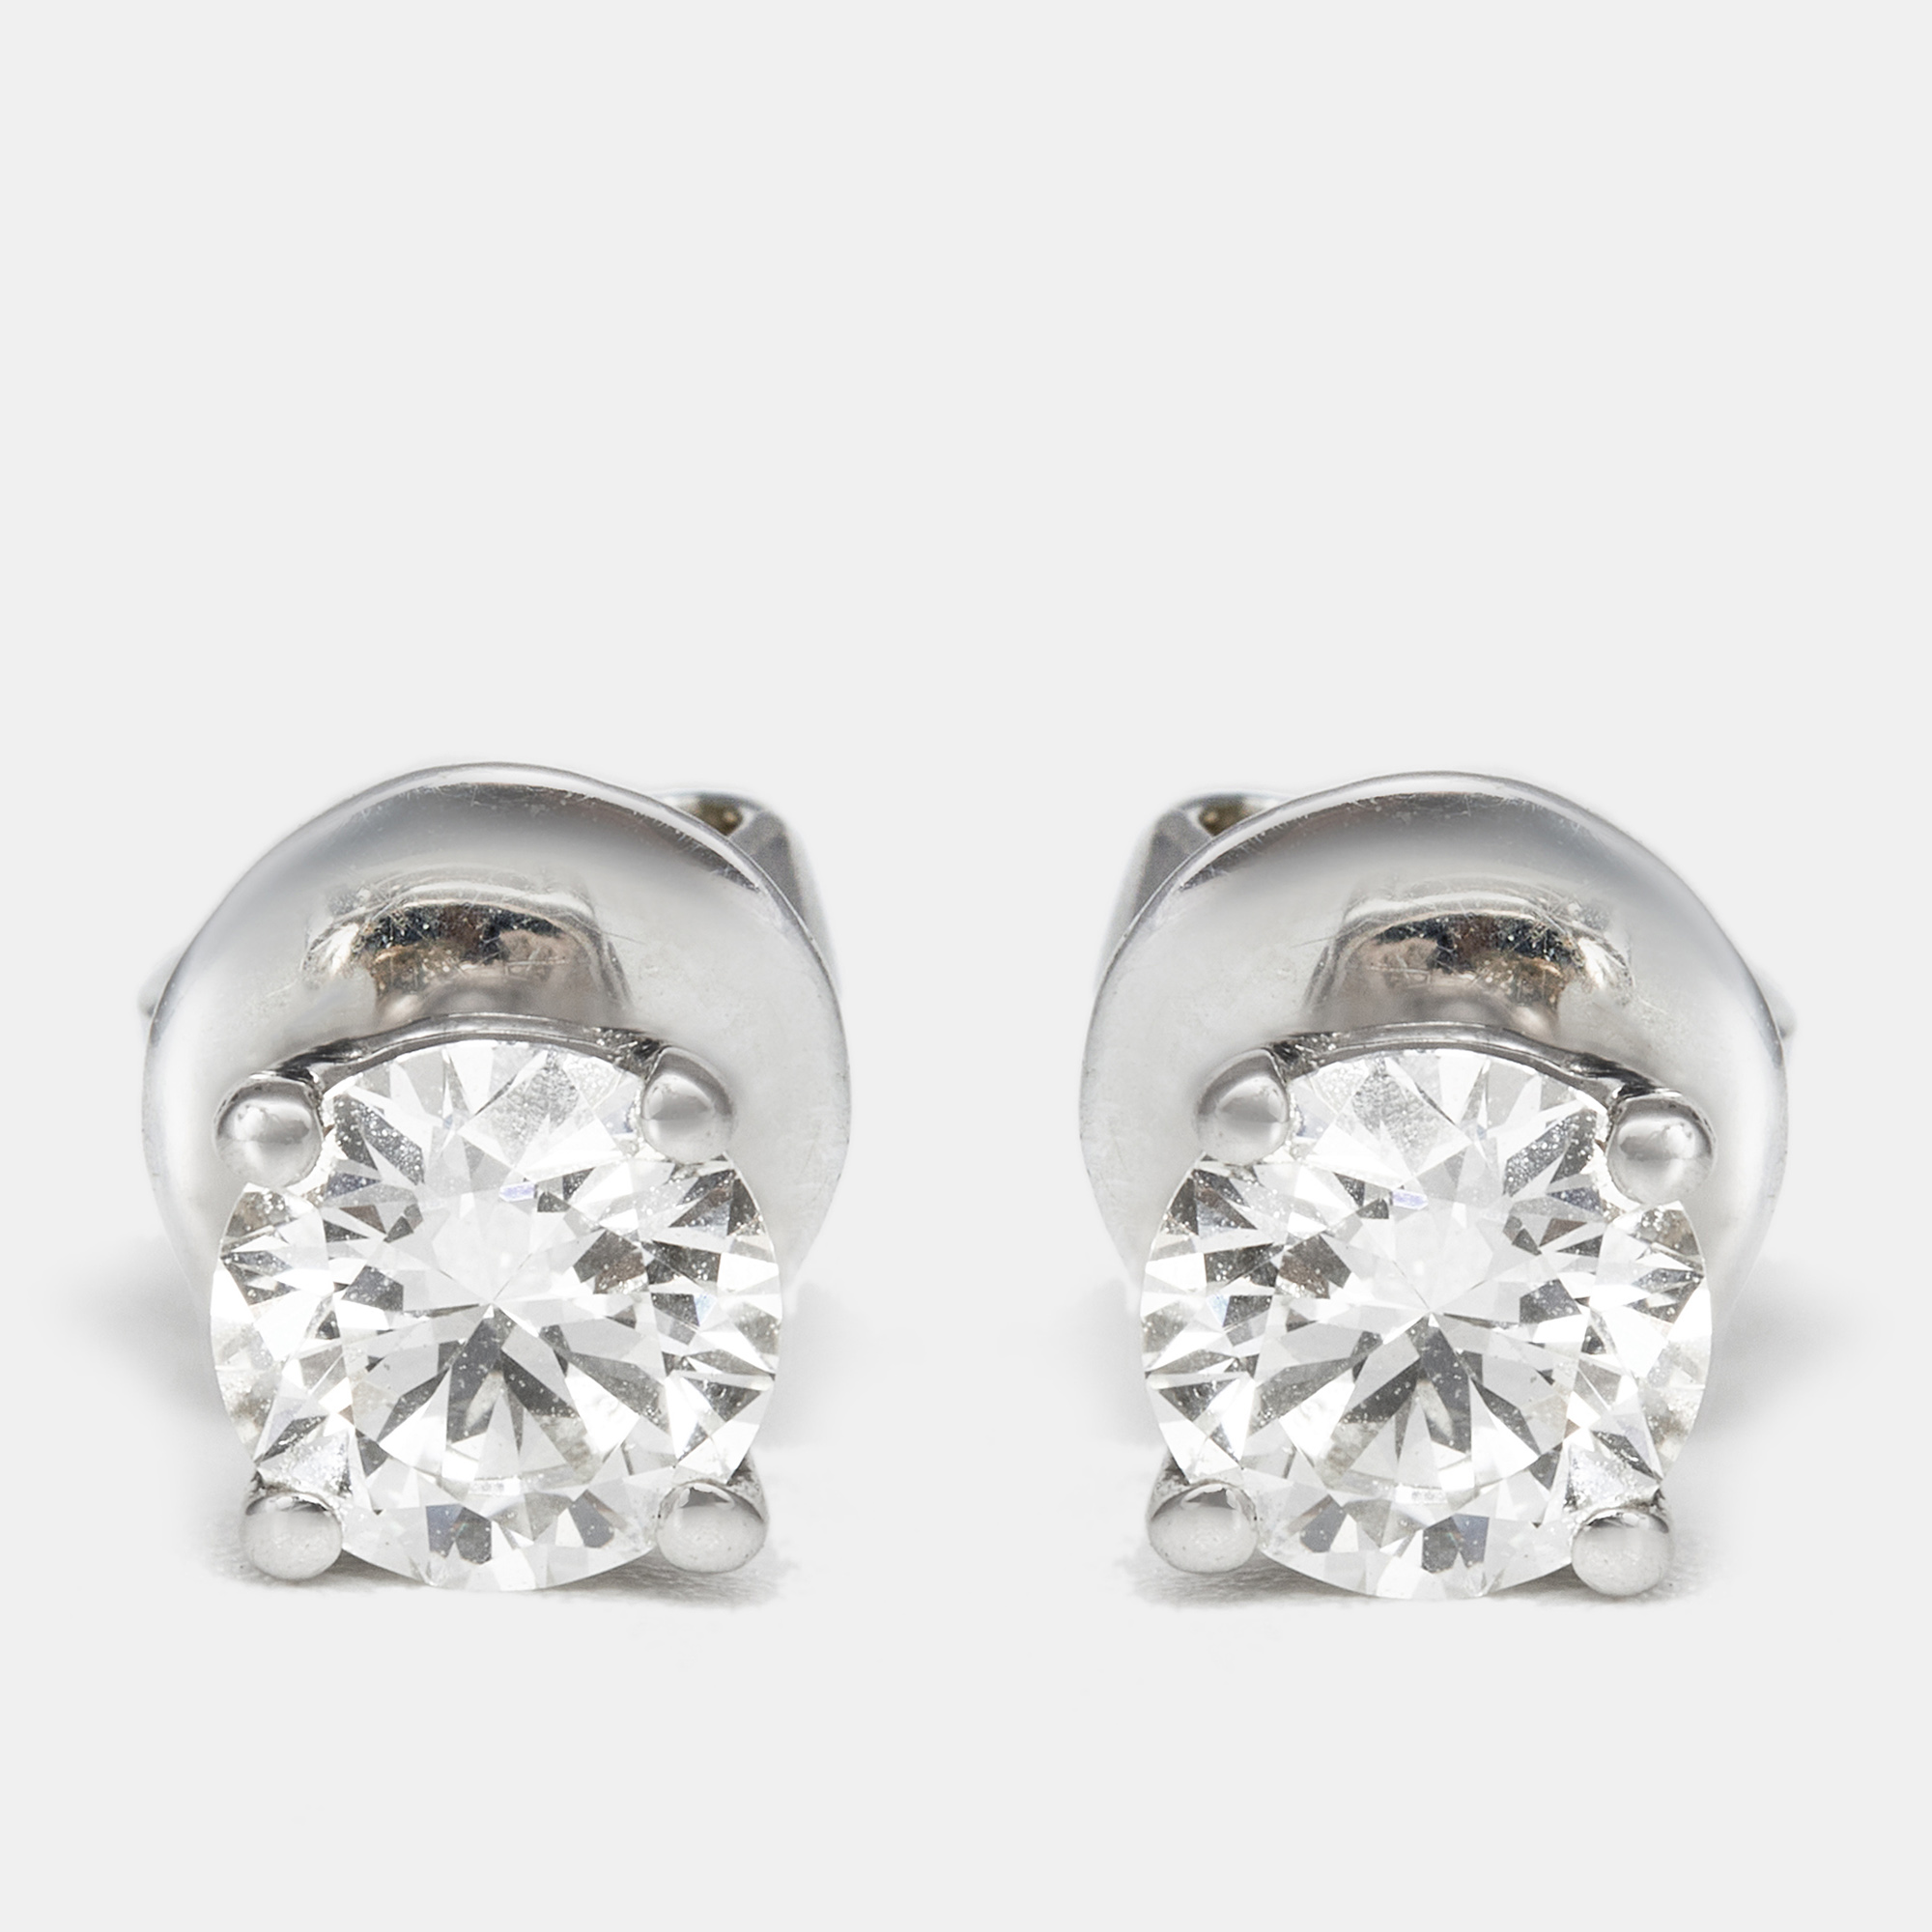 The diamond edit 18k white gold  earring